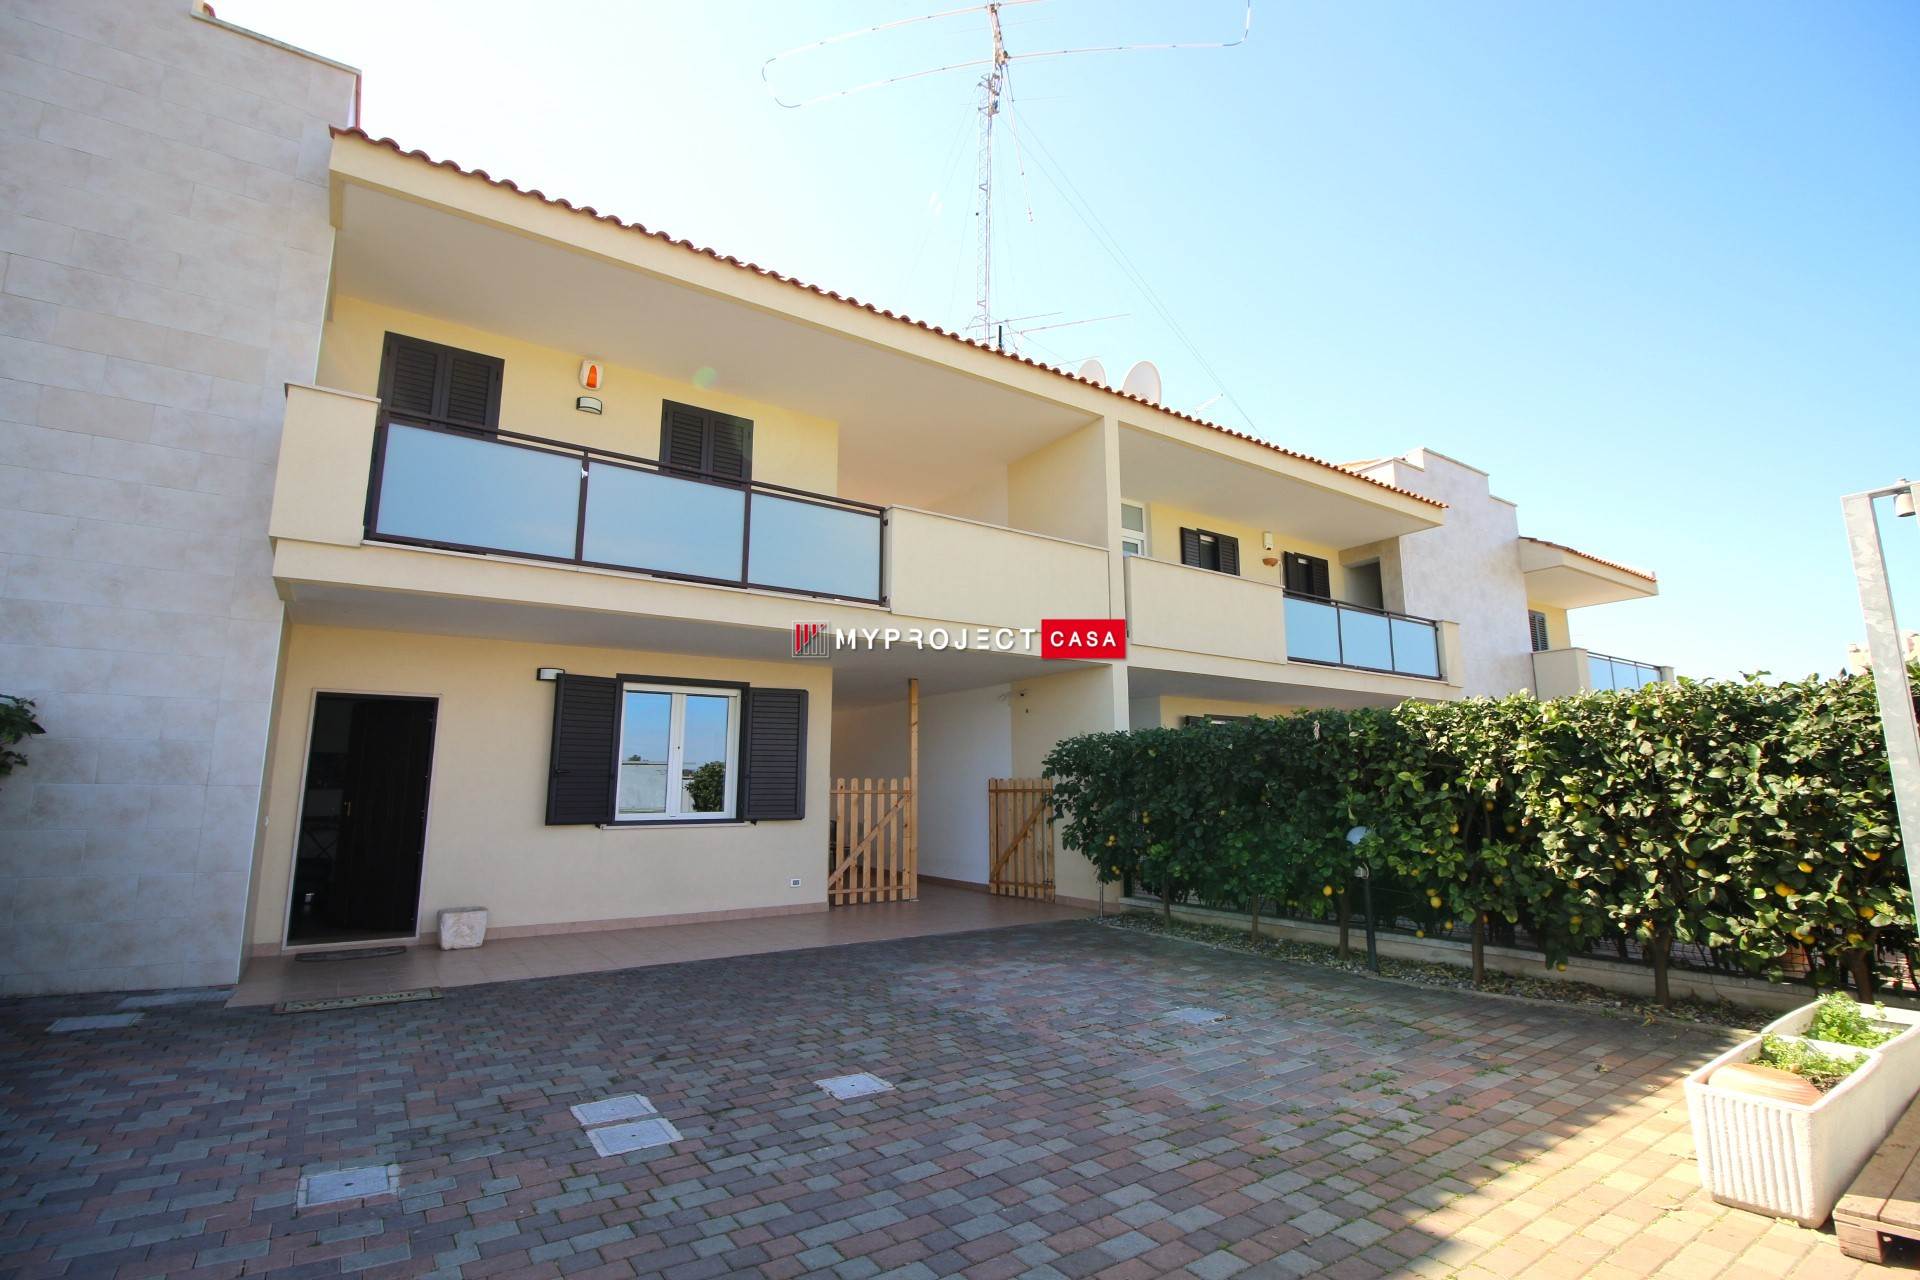 Villa in vendita a Taranto, 5 locali, zona o, prezzo € 255.000 | PortaleAgenzieImmobiliari.it